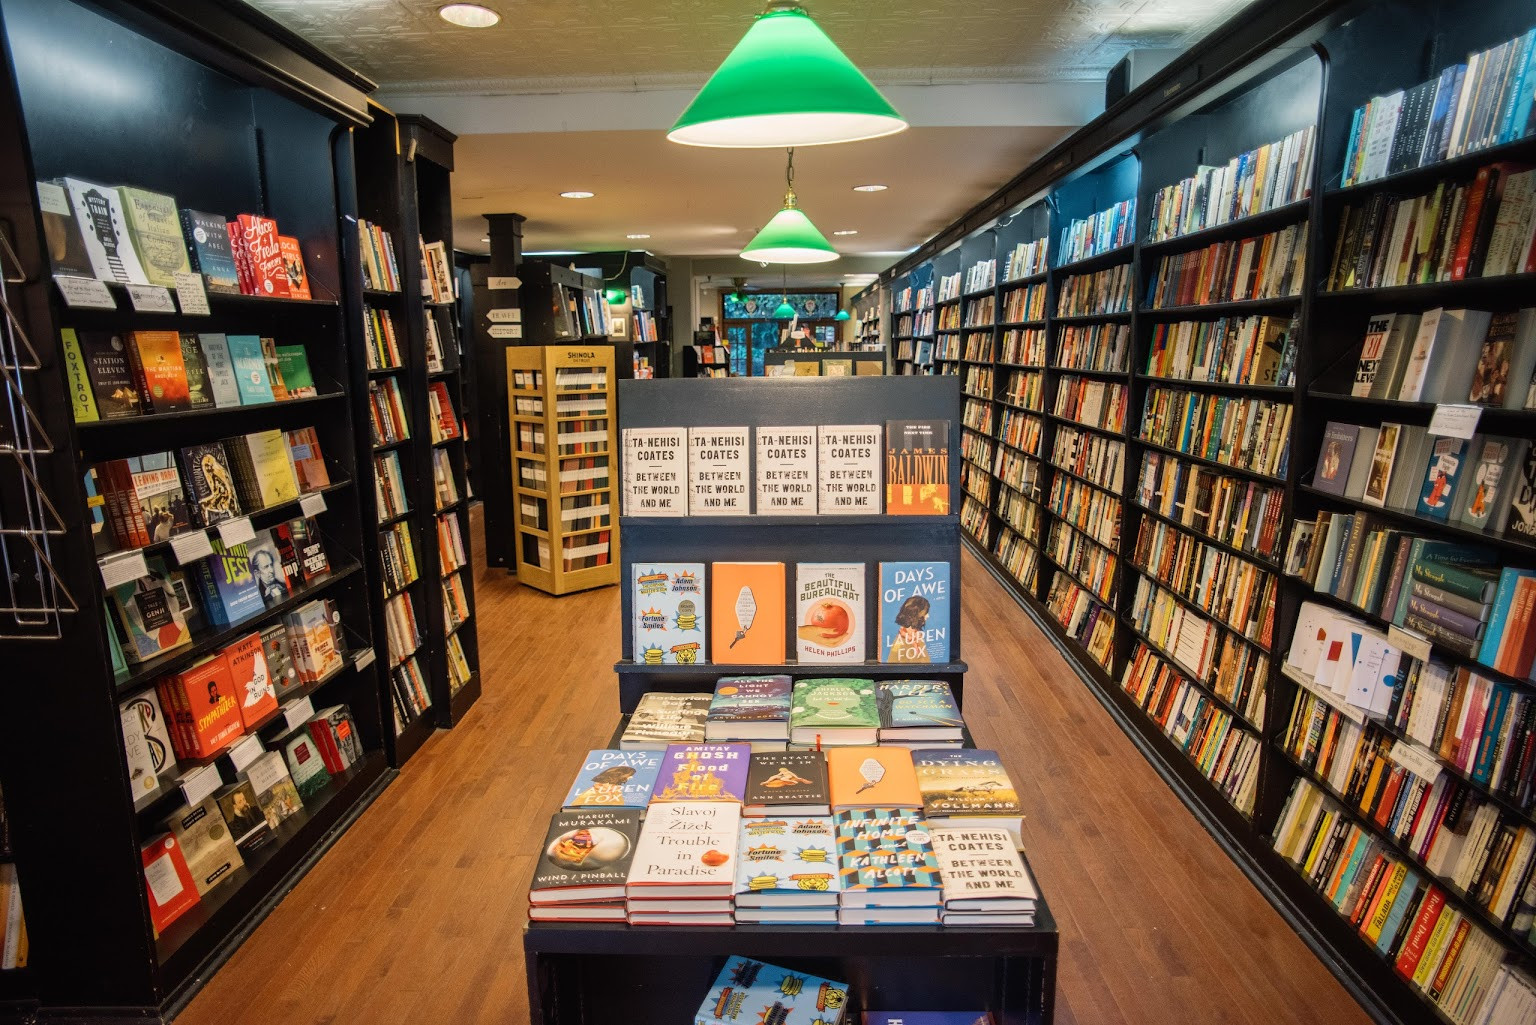 Best books shop. Название книжного магазина. Libreria книжный London. Книжный магазин бук шоп. Bookshop картинка.